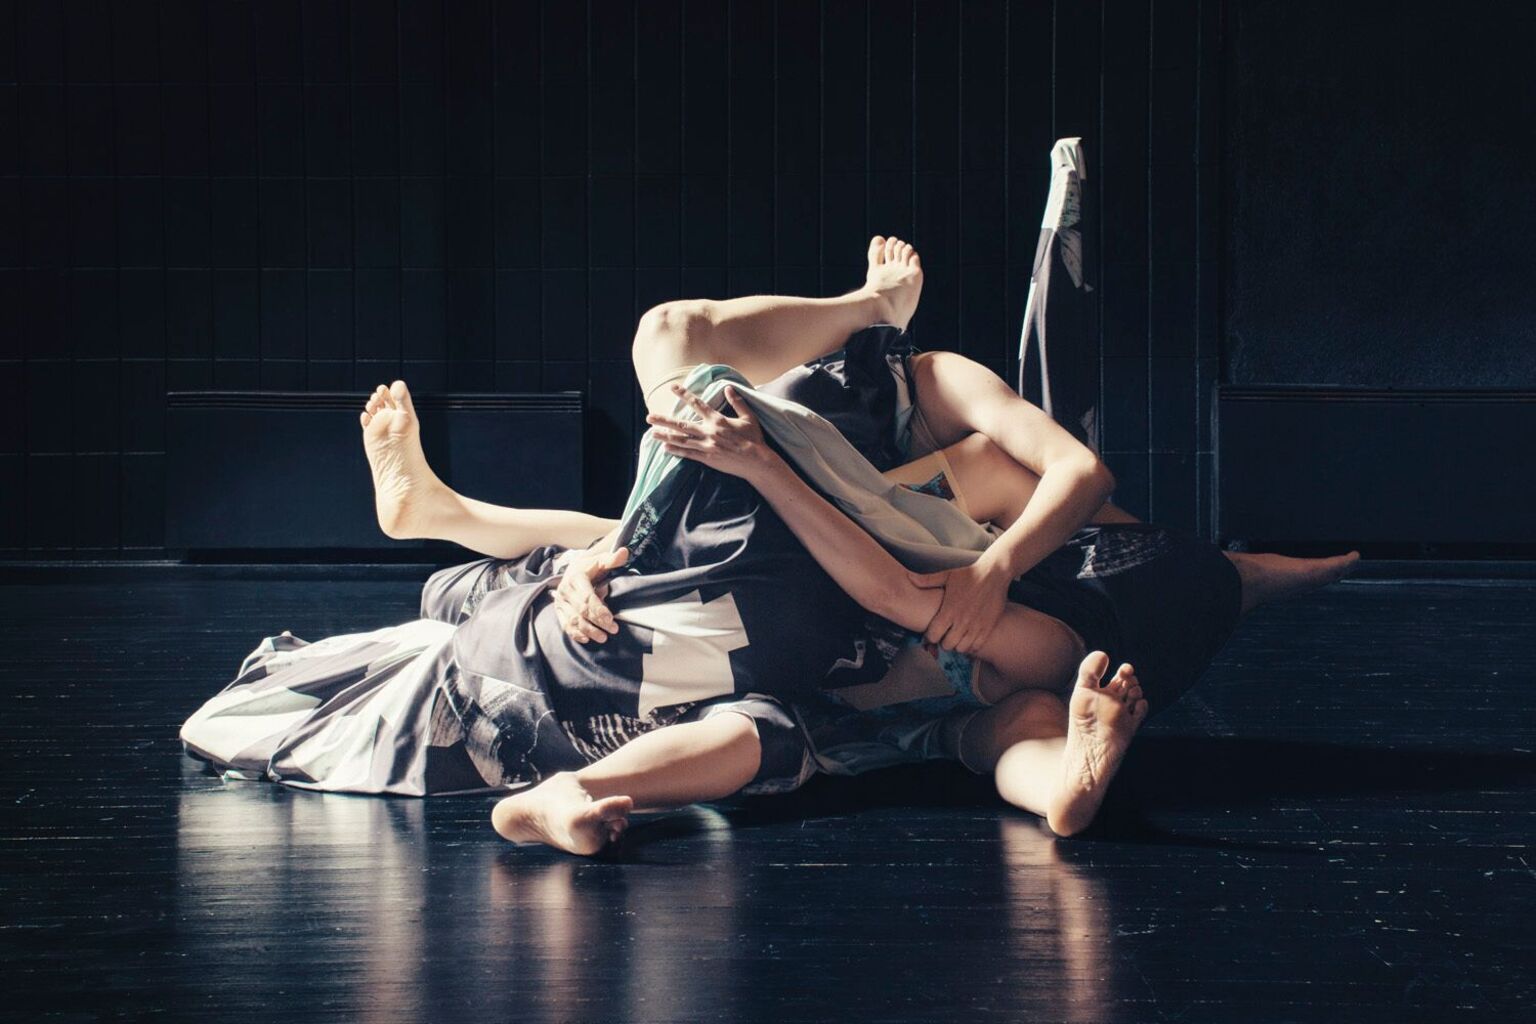 Bilde: Frå State (2016), danseperformance som er ein del av  stipendiatprosjektet Affective Choreographies til Ingrid Fiksdal. Meir info: www.ingridfiksdal.com
Foto: Anders Lindén